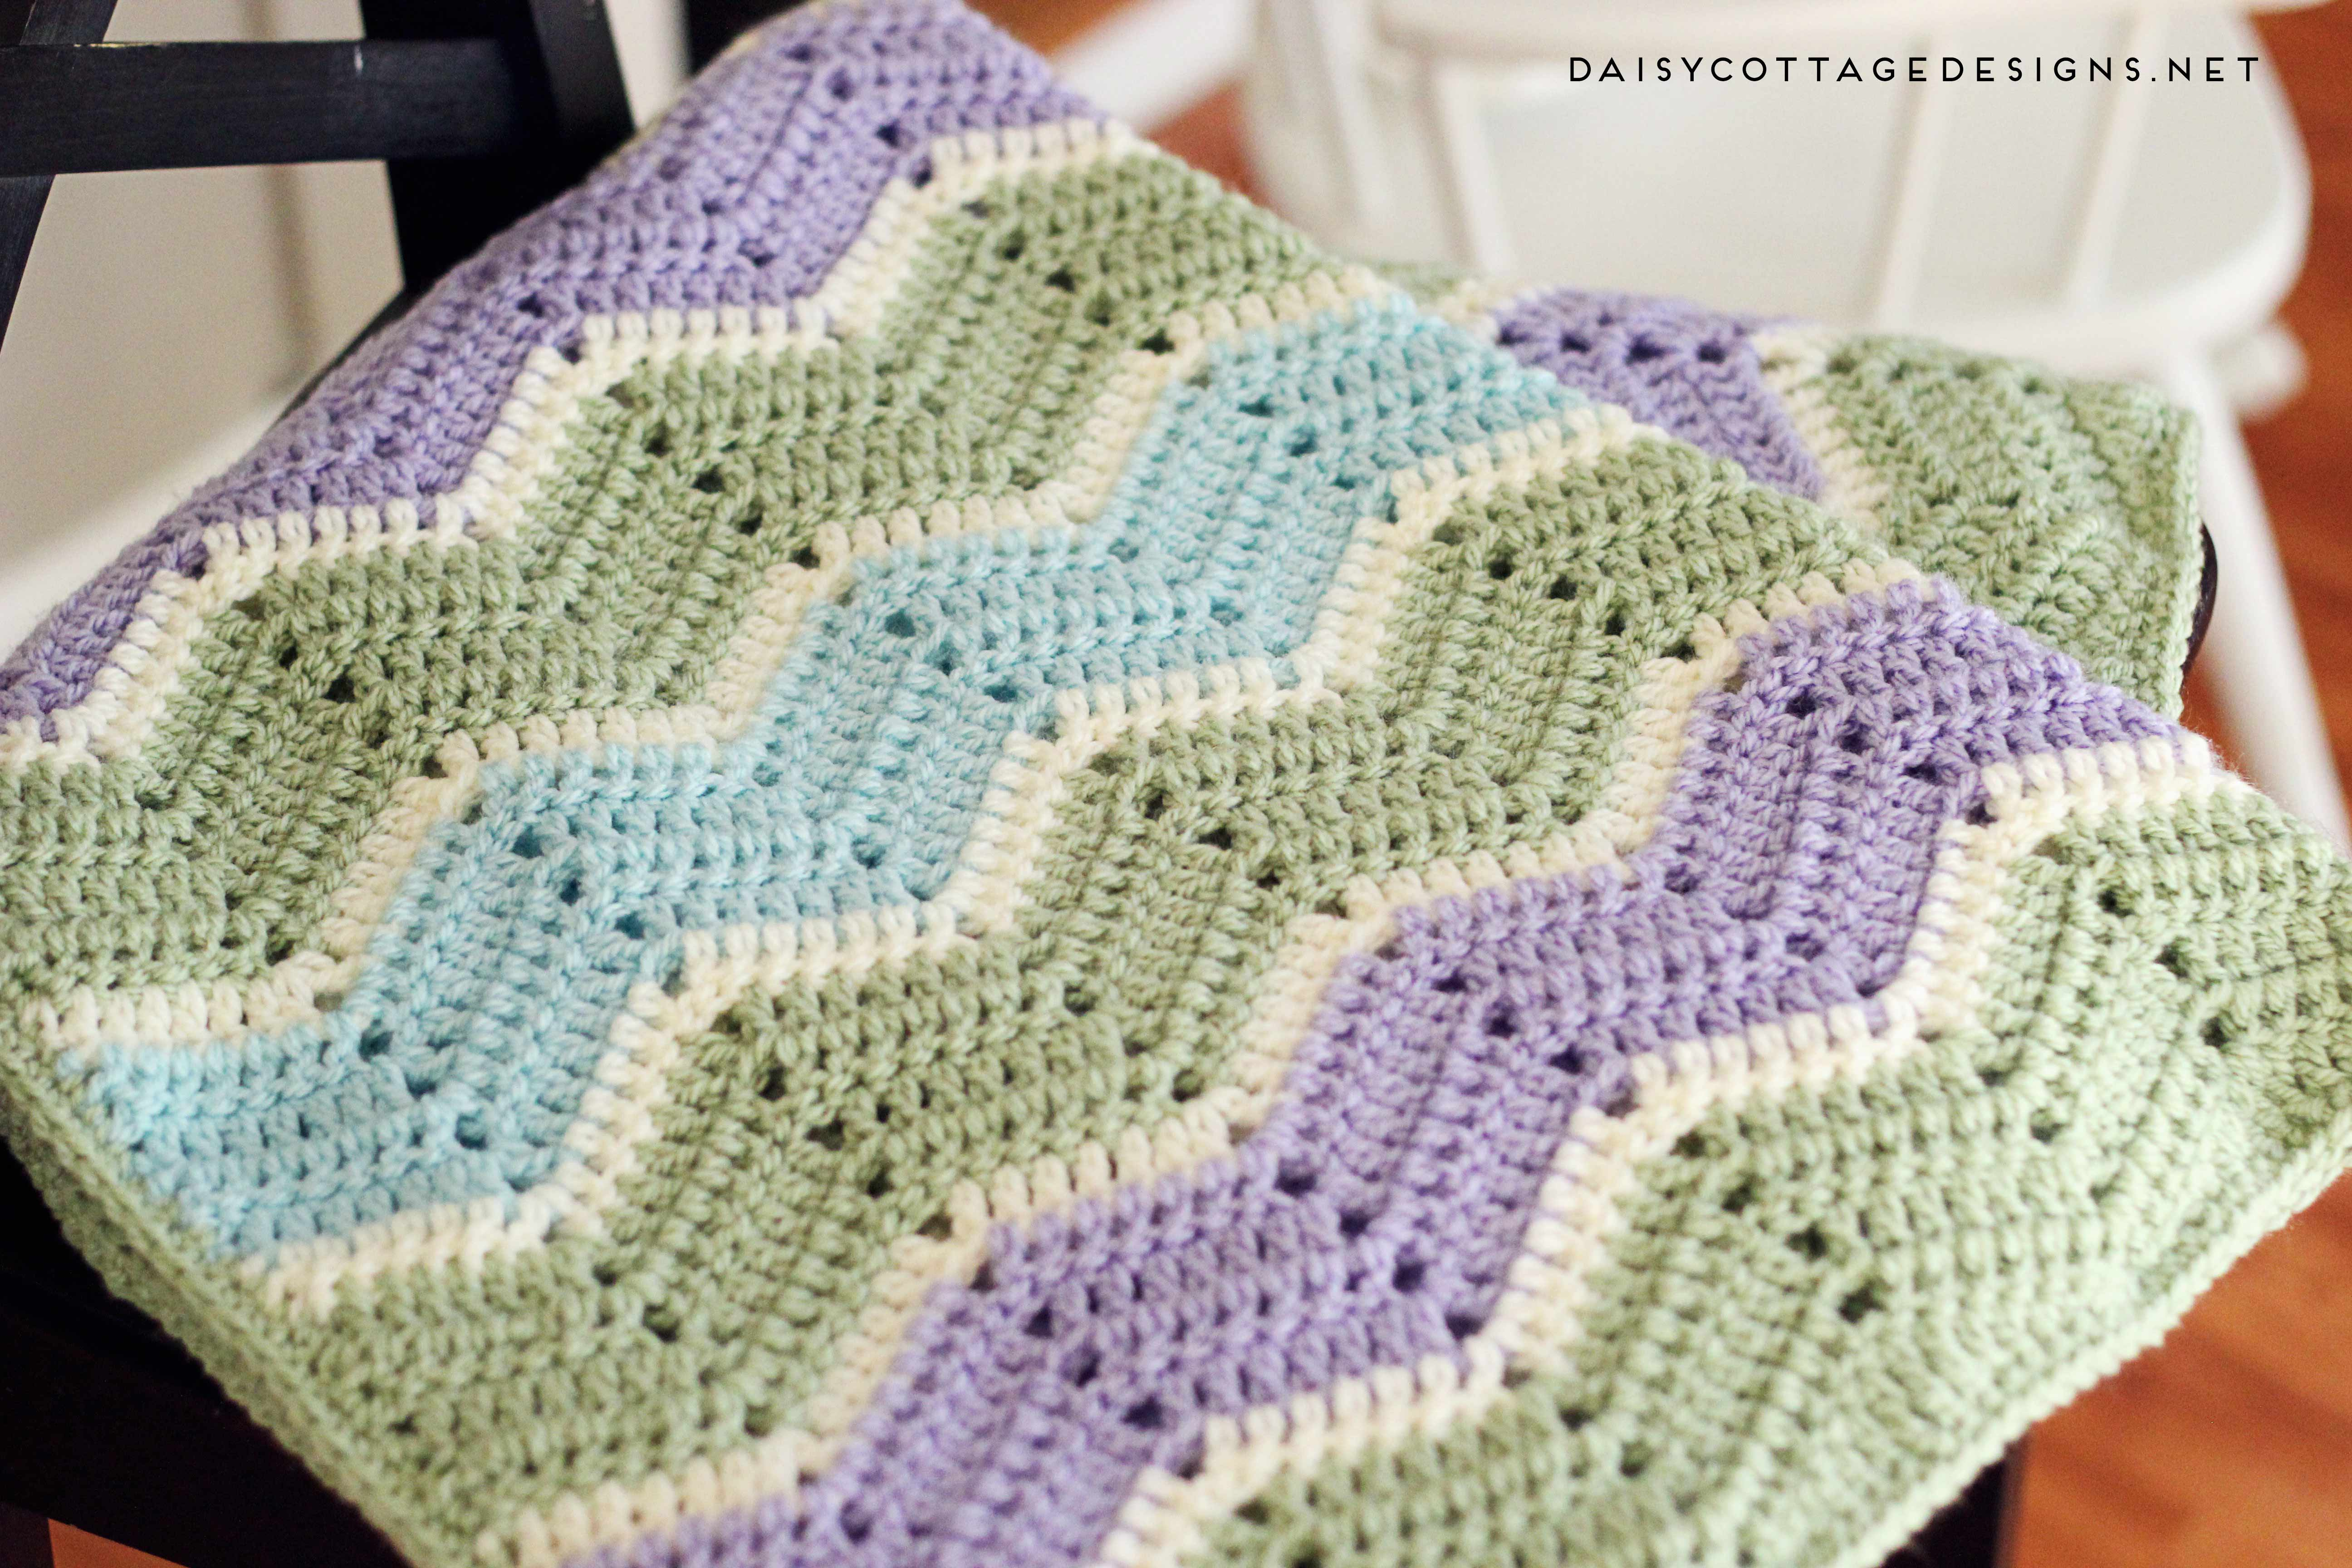 Crochet Pattern For Baby Blanket Easy Chevron Blanket Crochet Pattern Daisy Cottage Designs